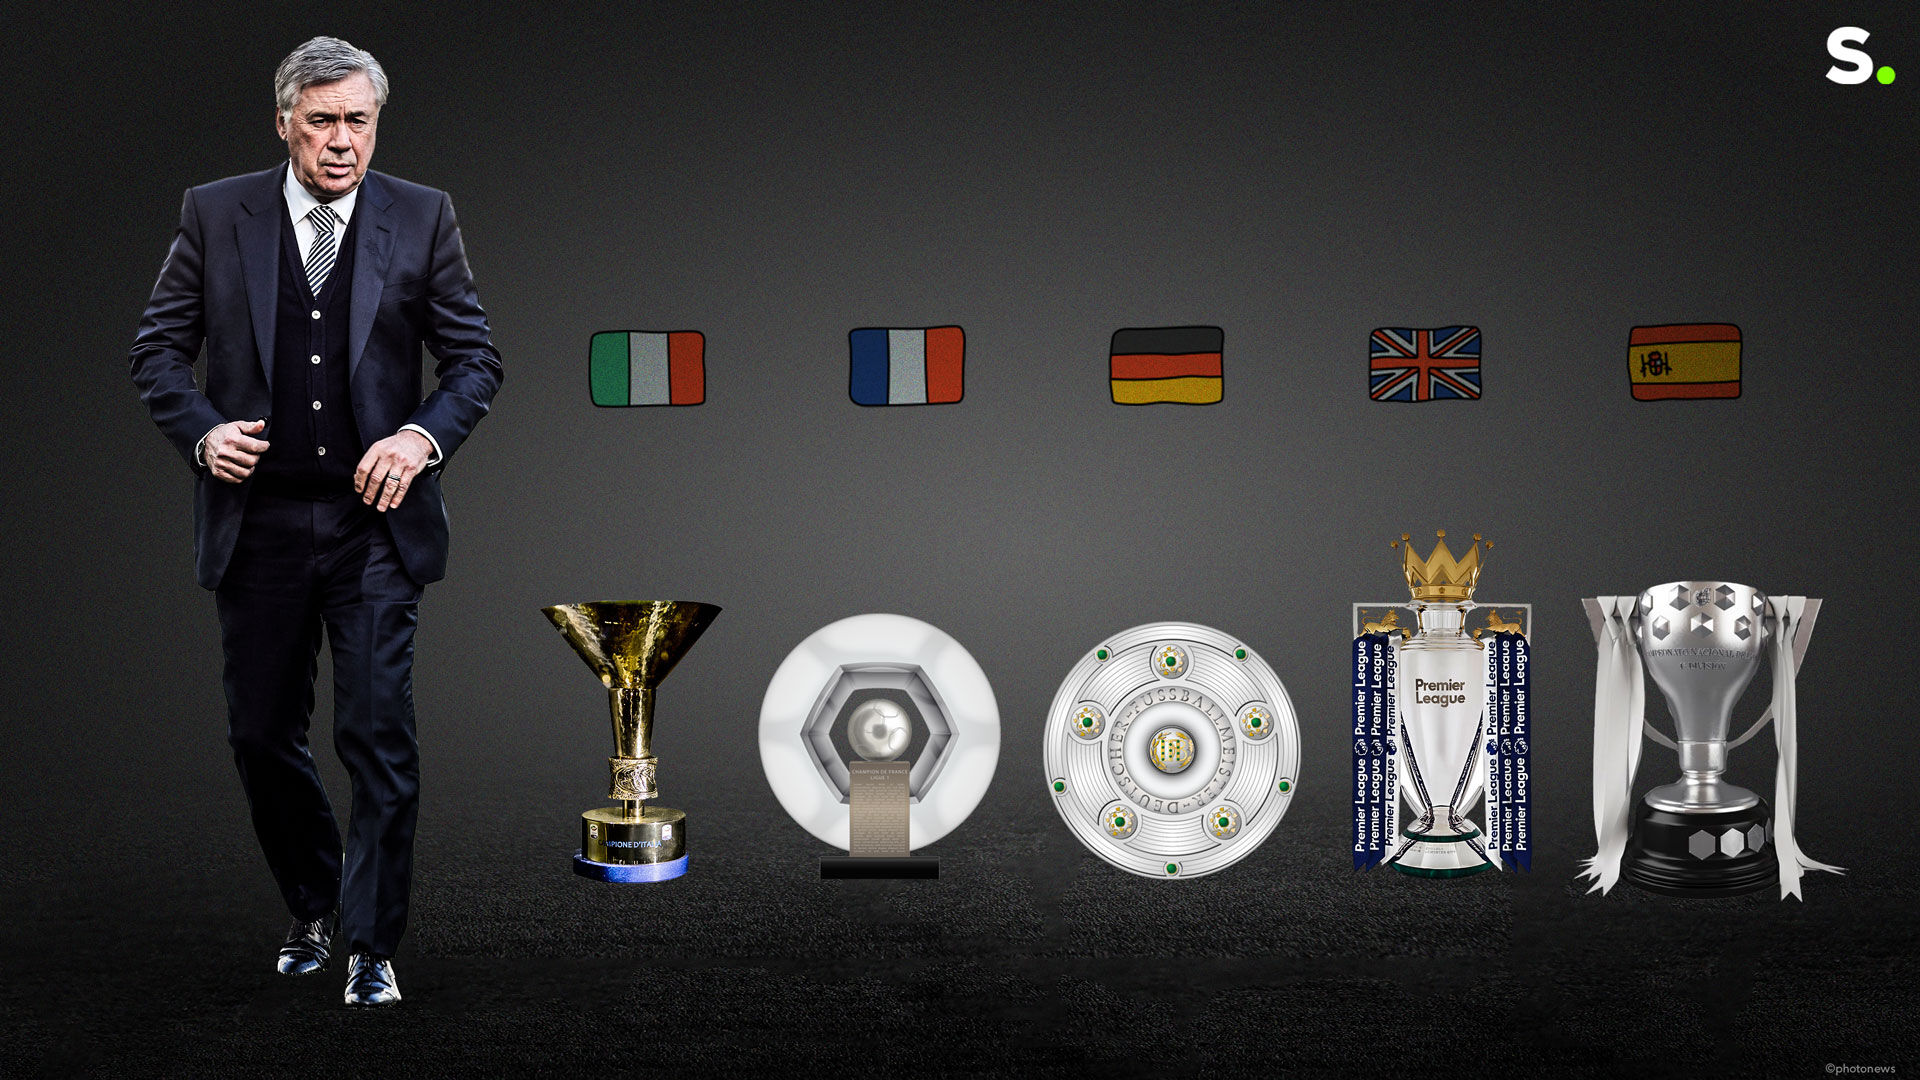 Carlo Ancelotti è il primo allenatore a diventare campione nelle 5 migliori competizioni: “Ne sono molto orgoglioso” |  premier League